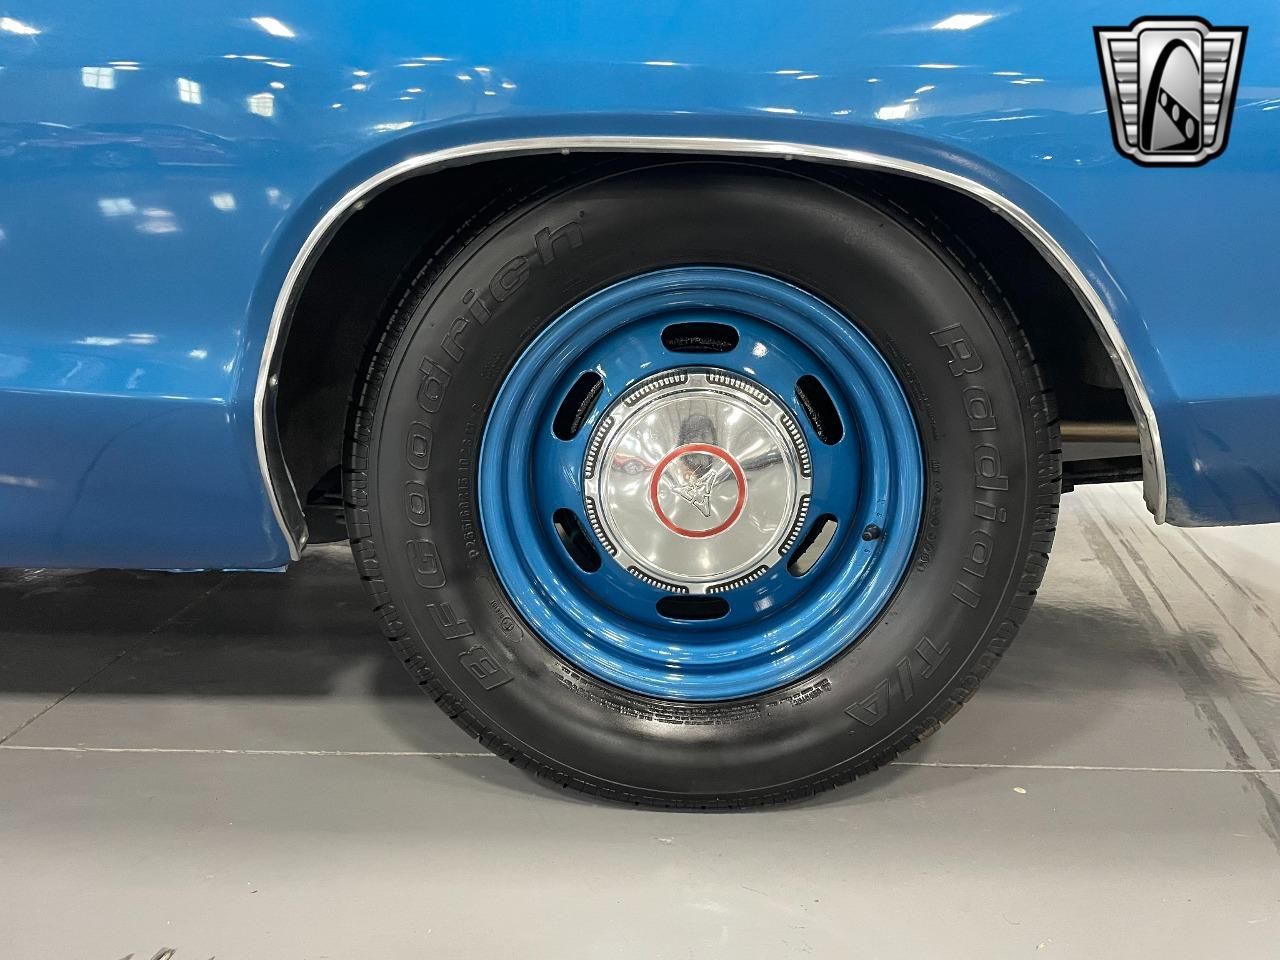 1969 Dodge Super Bee